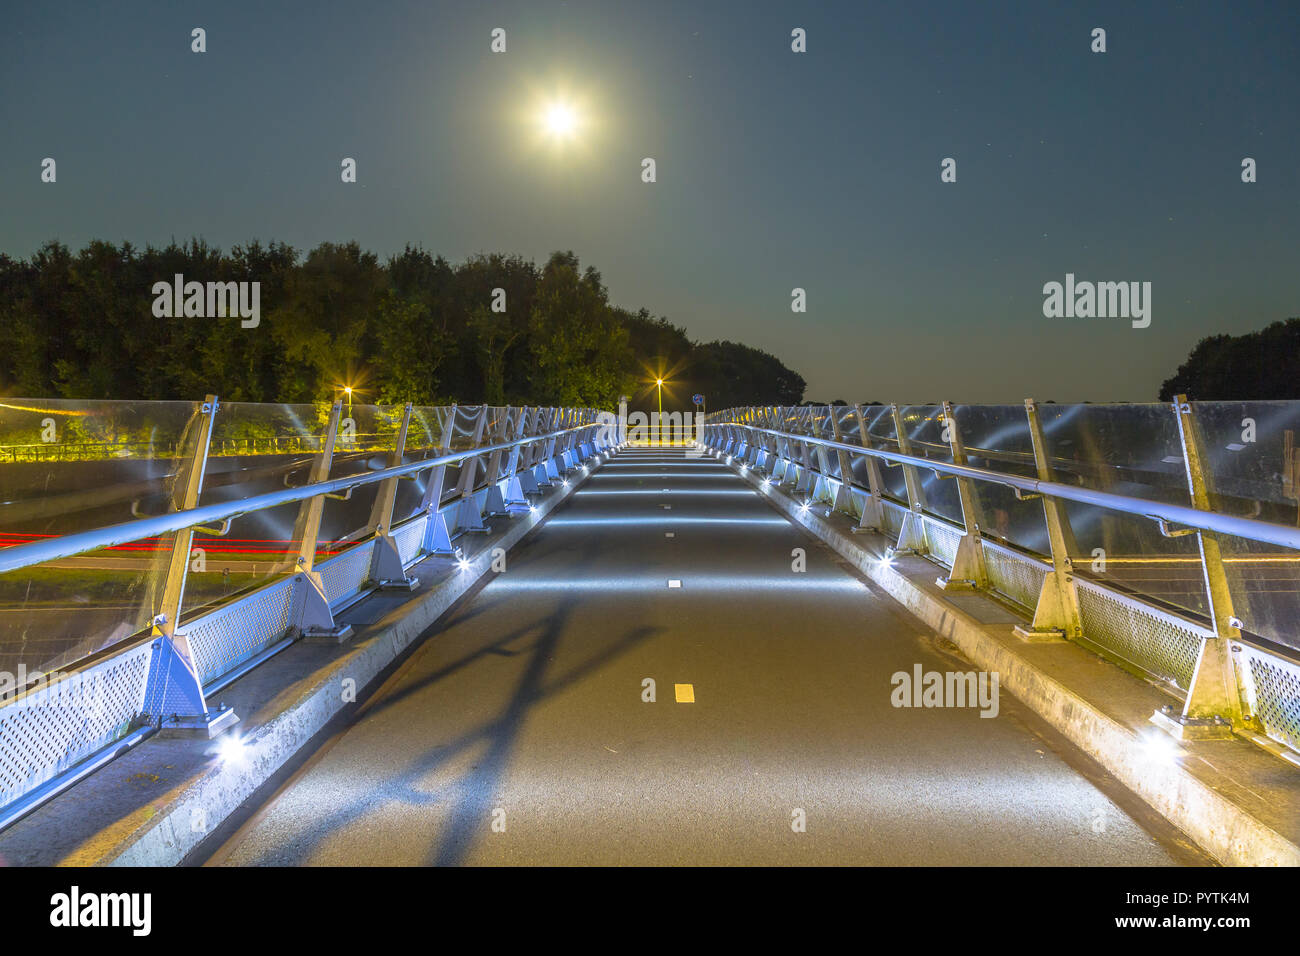 Escursioni in bicicletta ponte con basso livello di illuminazione per evitare di disturbare della rotta di migrazione di animali notturni come pipistrelli e gufi Foto Stock